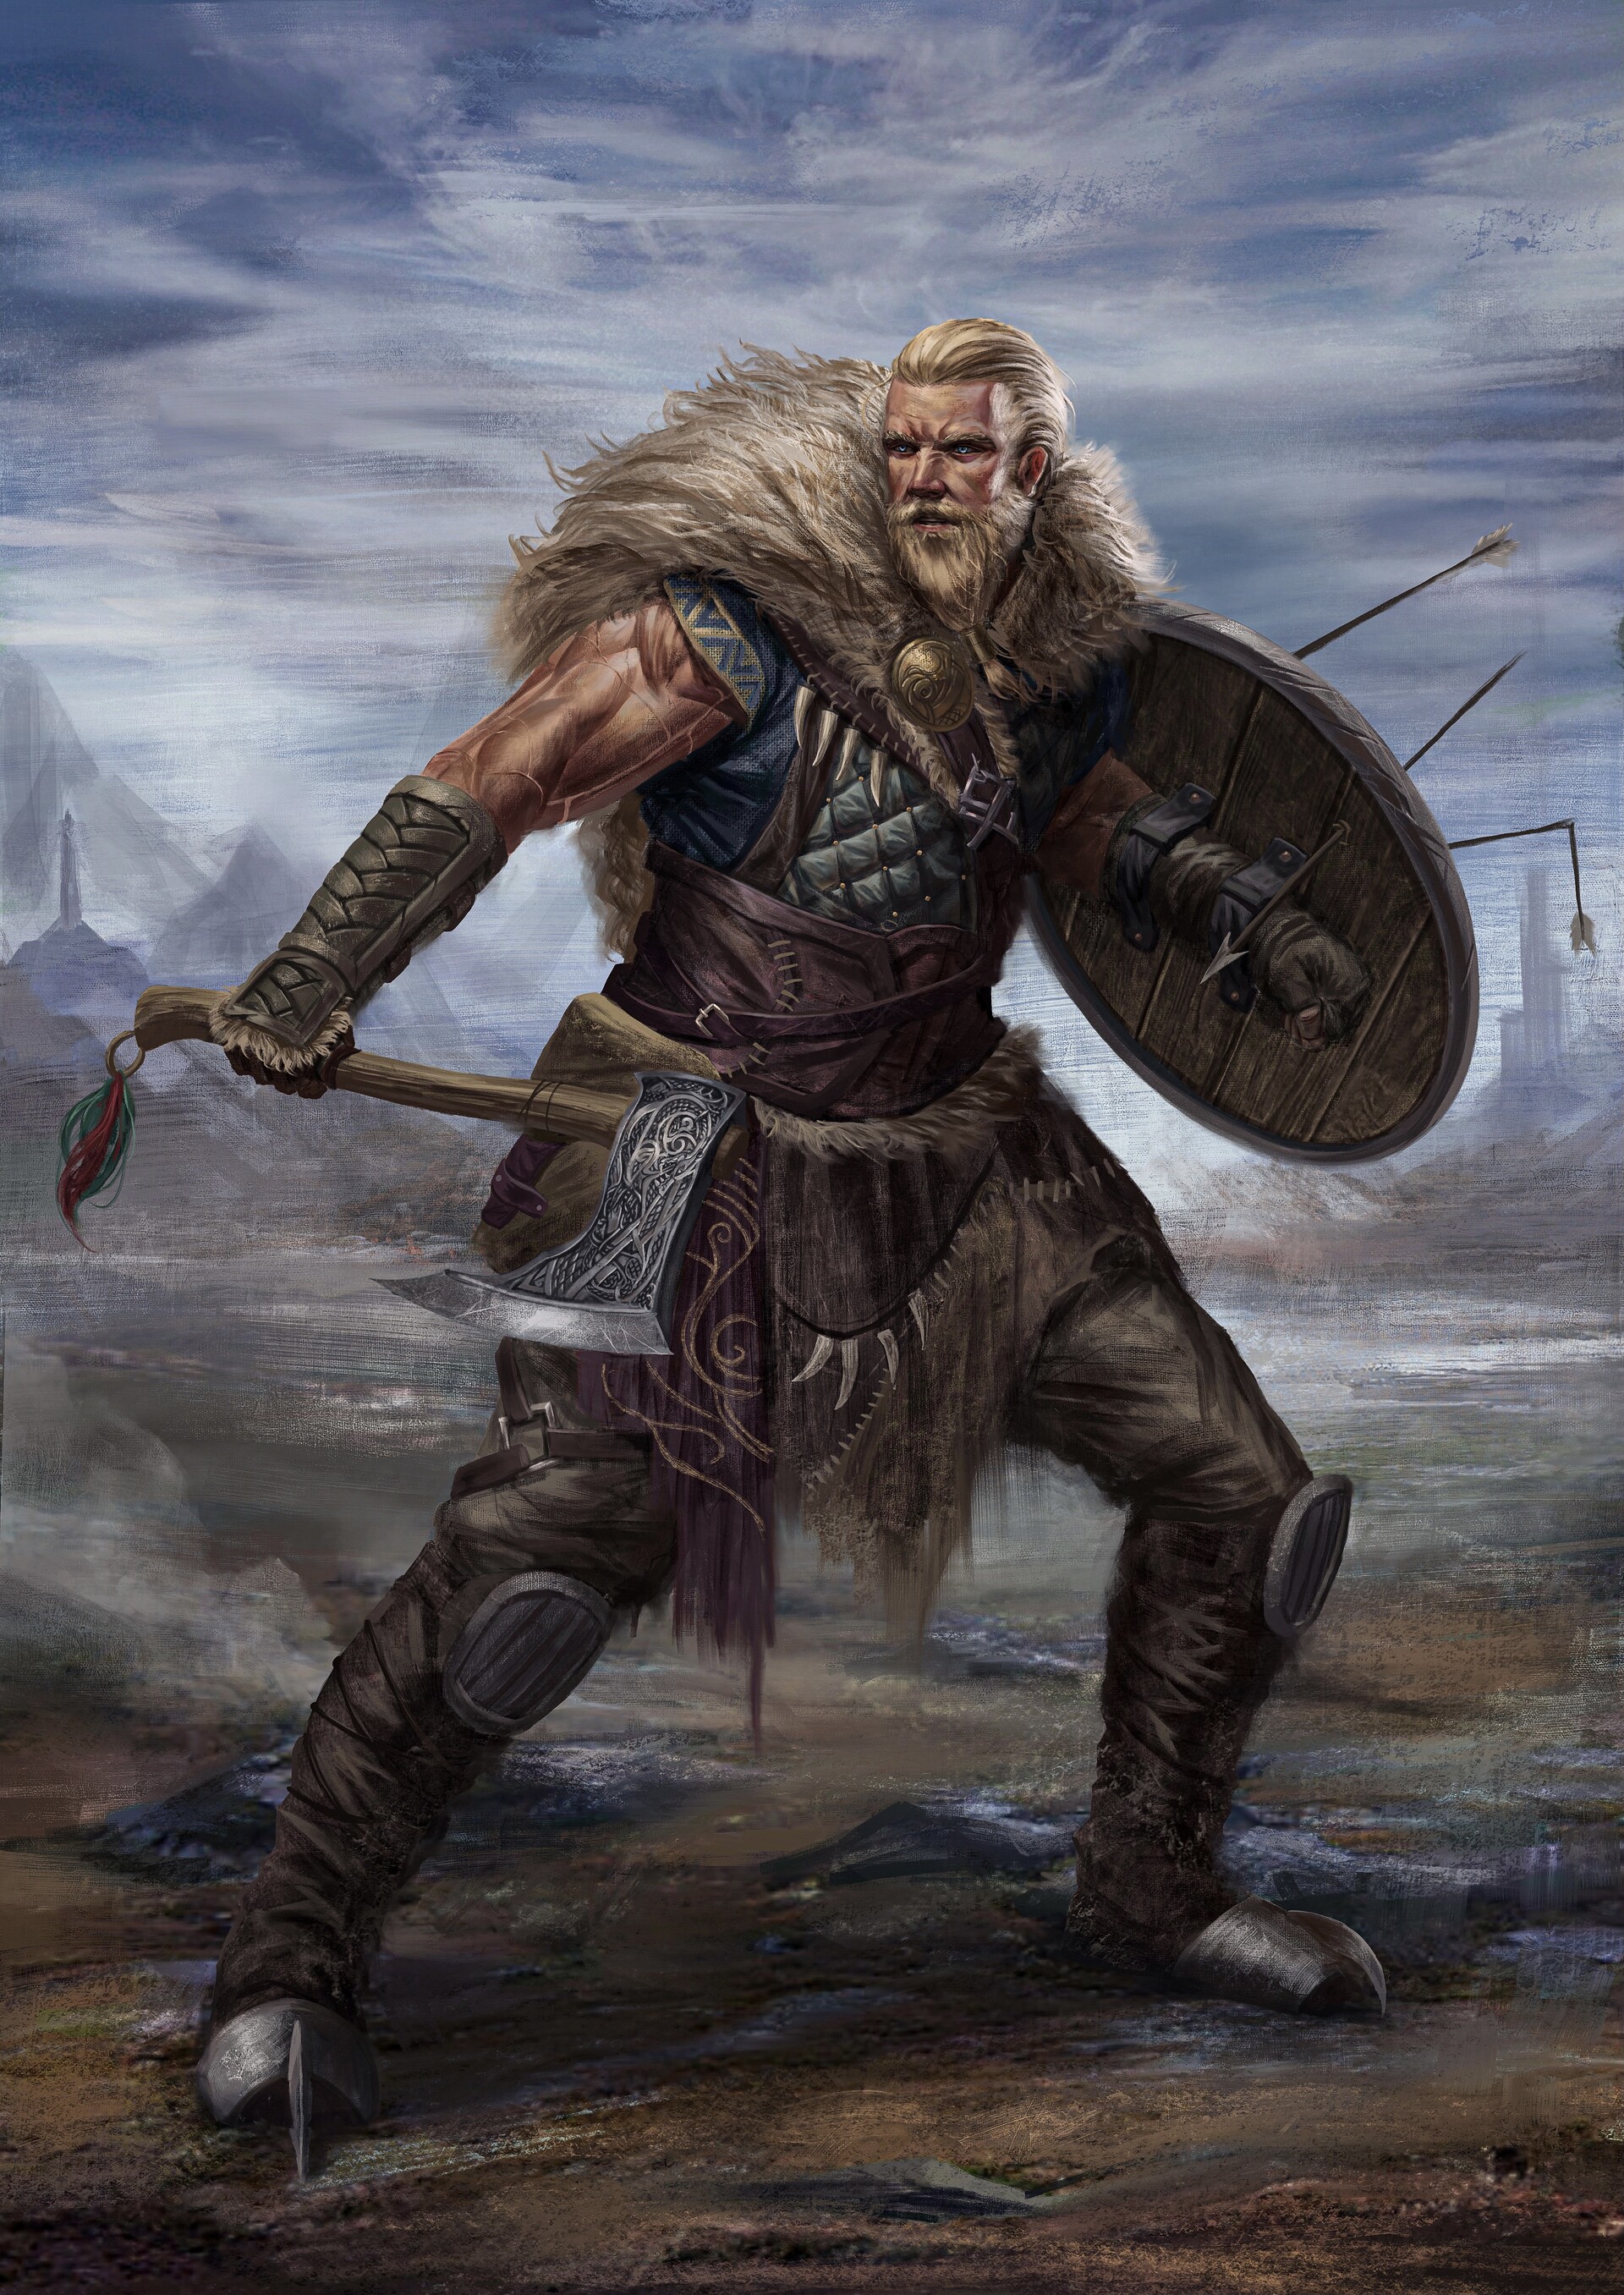 ArtStation - Artwork done for viking themed boardgame